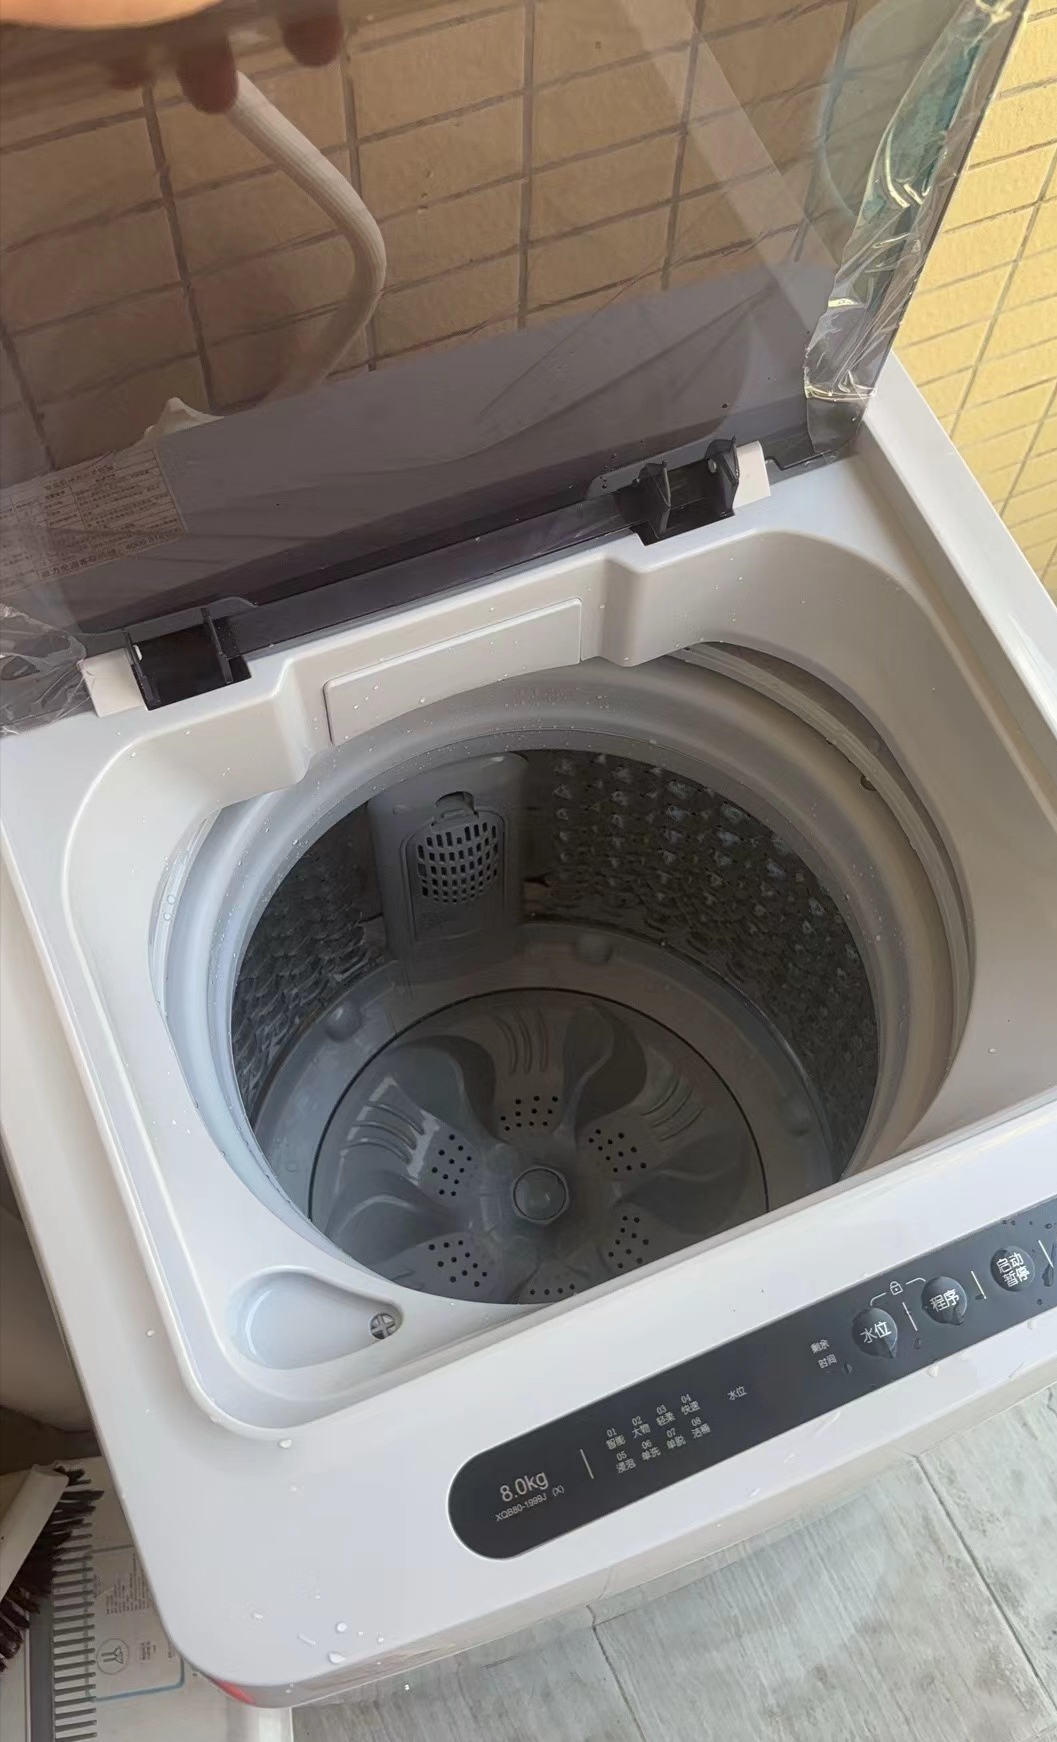 威力(WEILI)8公斤波轮洗衣机全自动 13分钟快洗 安全童锁 自判水位 单独脱水 以旧换新XQB80-1999J晒单图